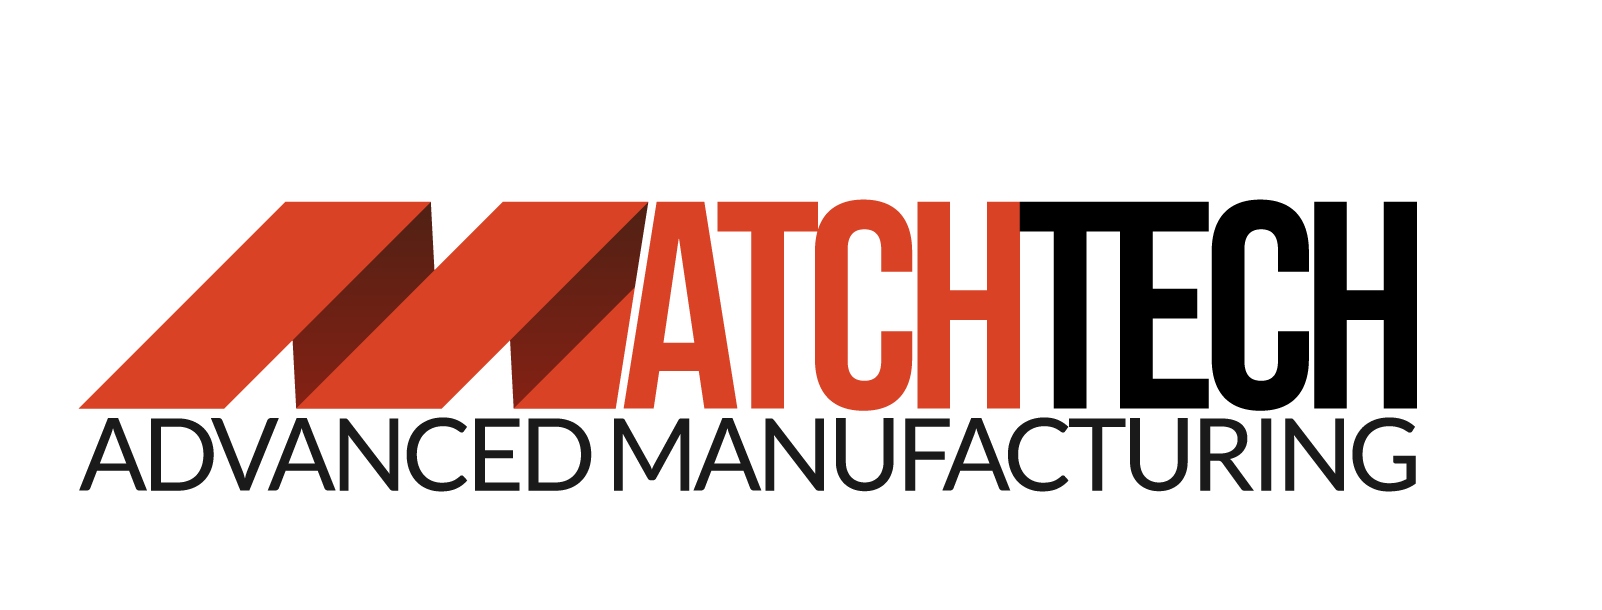 Matchtech Advanced Manufacturing Inc.